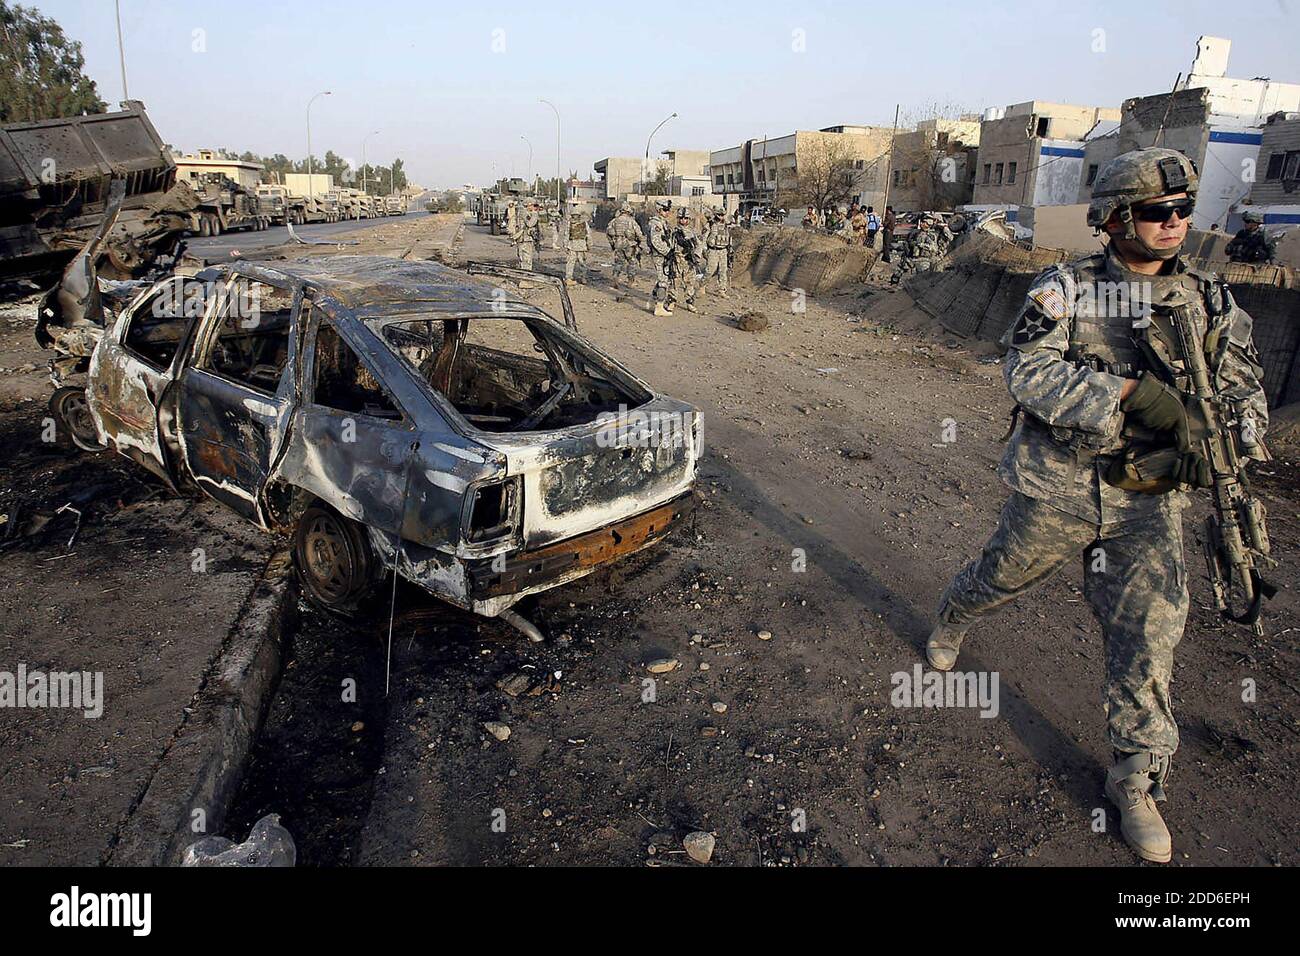 NO HAY PELÍCULA, NO HAY VÍDEO, NO HAY TELEVISIÓN, NO HAY DOCUMENTAL - SPC. Joseph Tourand vigila las calles de Mosul, Irak, después de una bomba de camión suicida que mató a 10 civiles iraquíes y a un policía iraquí el jueves, 19 de octubre de 2006. Foto de Tony Overman/The Olympian/MCT/ABACAPRESS.COM Foto de stock